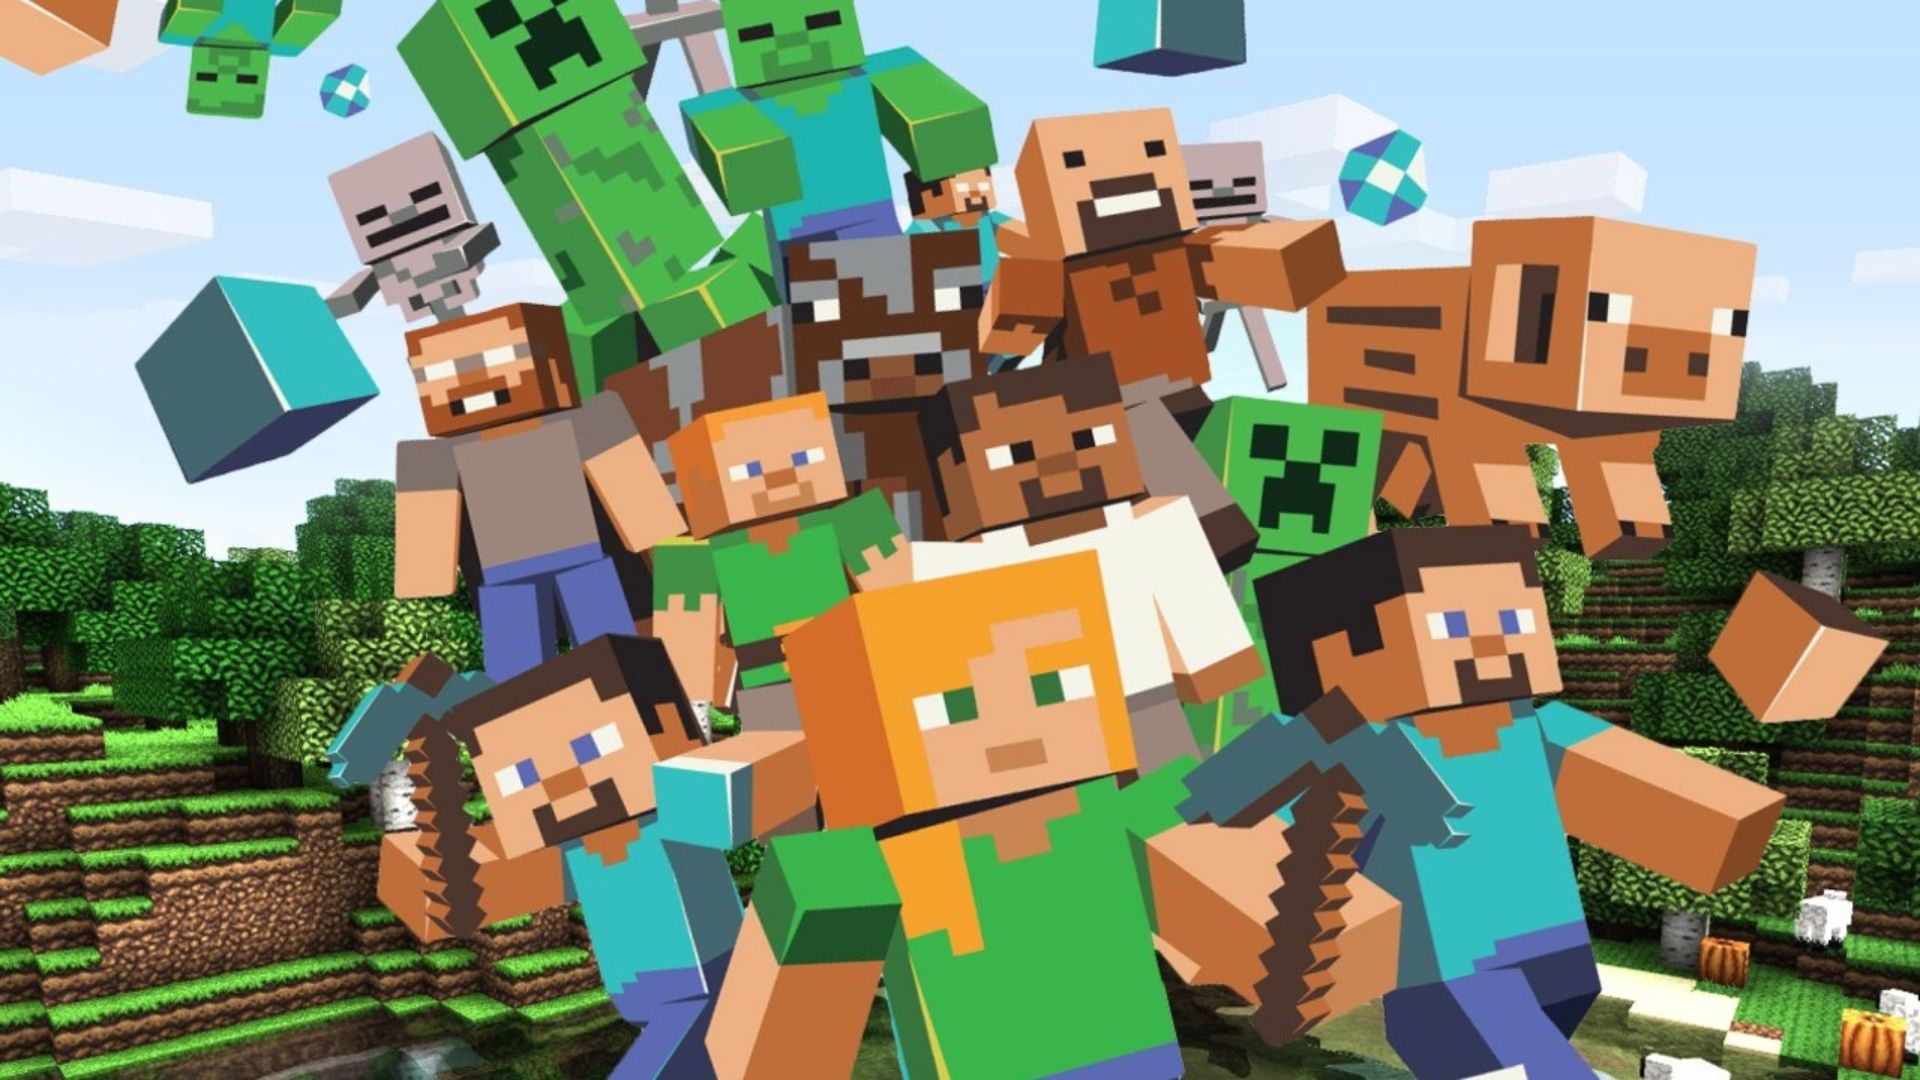 Minecraft ofrece contenidos educativos gratuitos durante la cuarentena